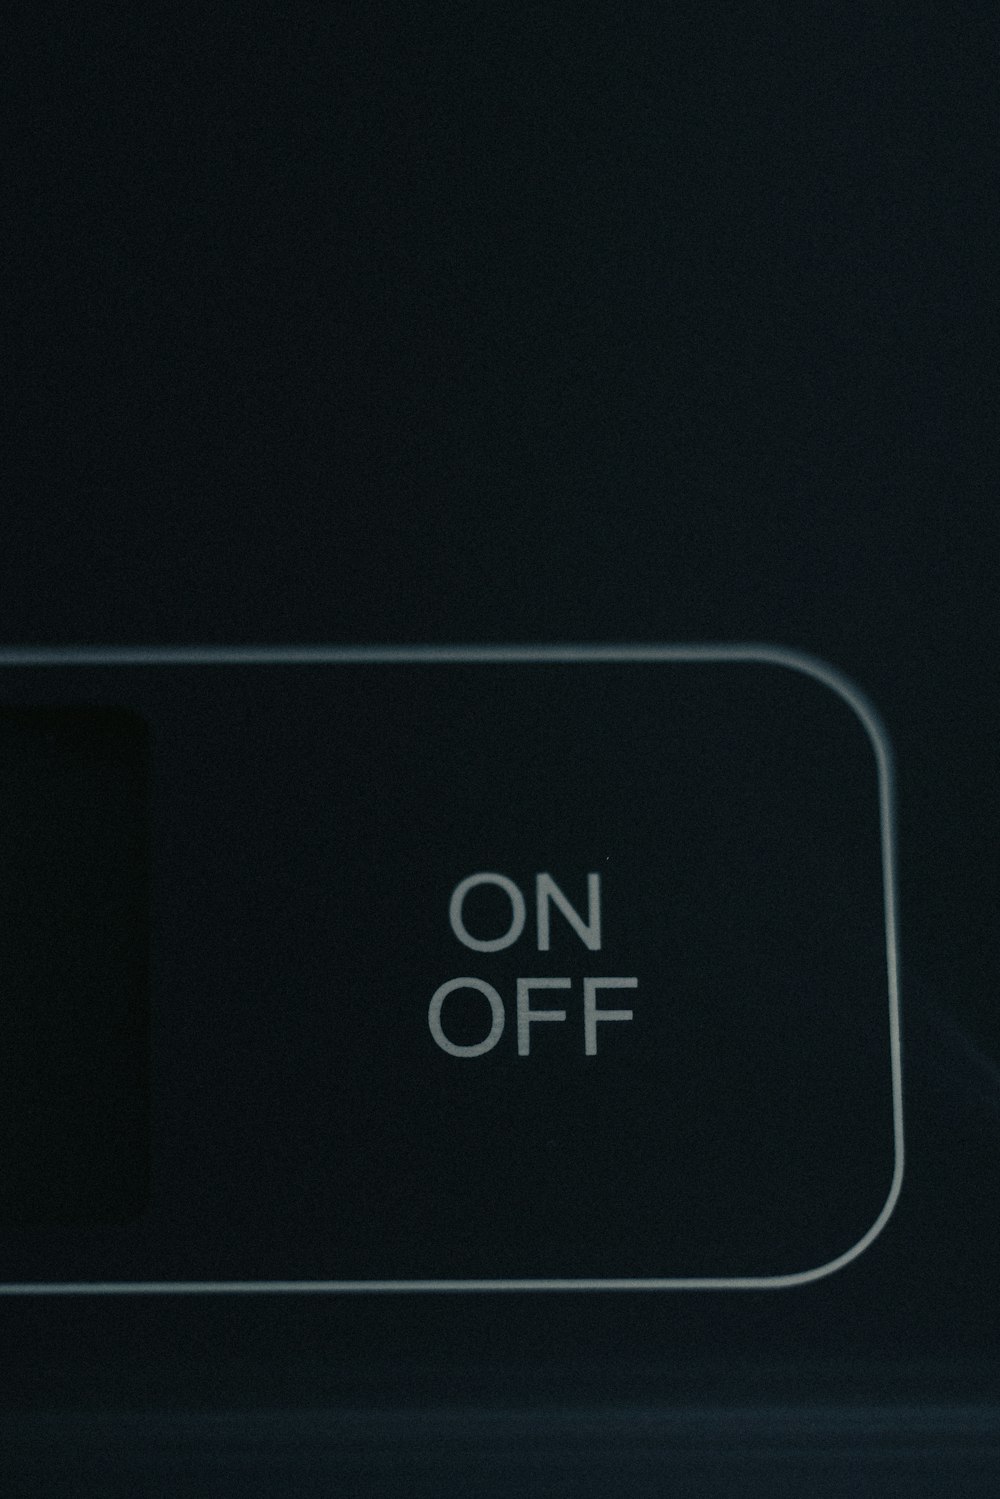 Un botón de encendido apagado en una pared negra